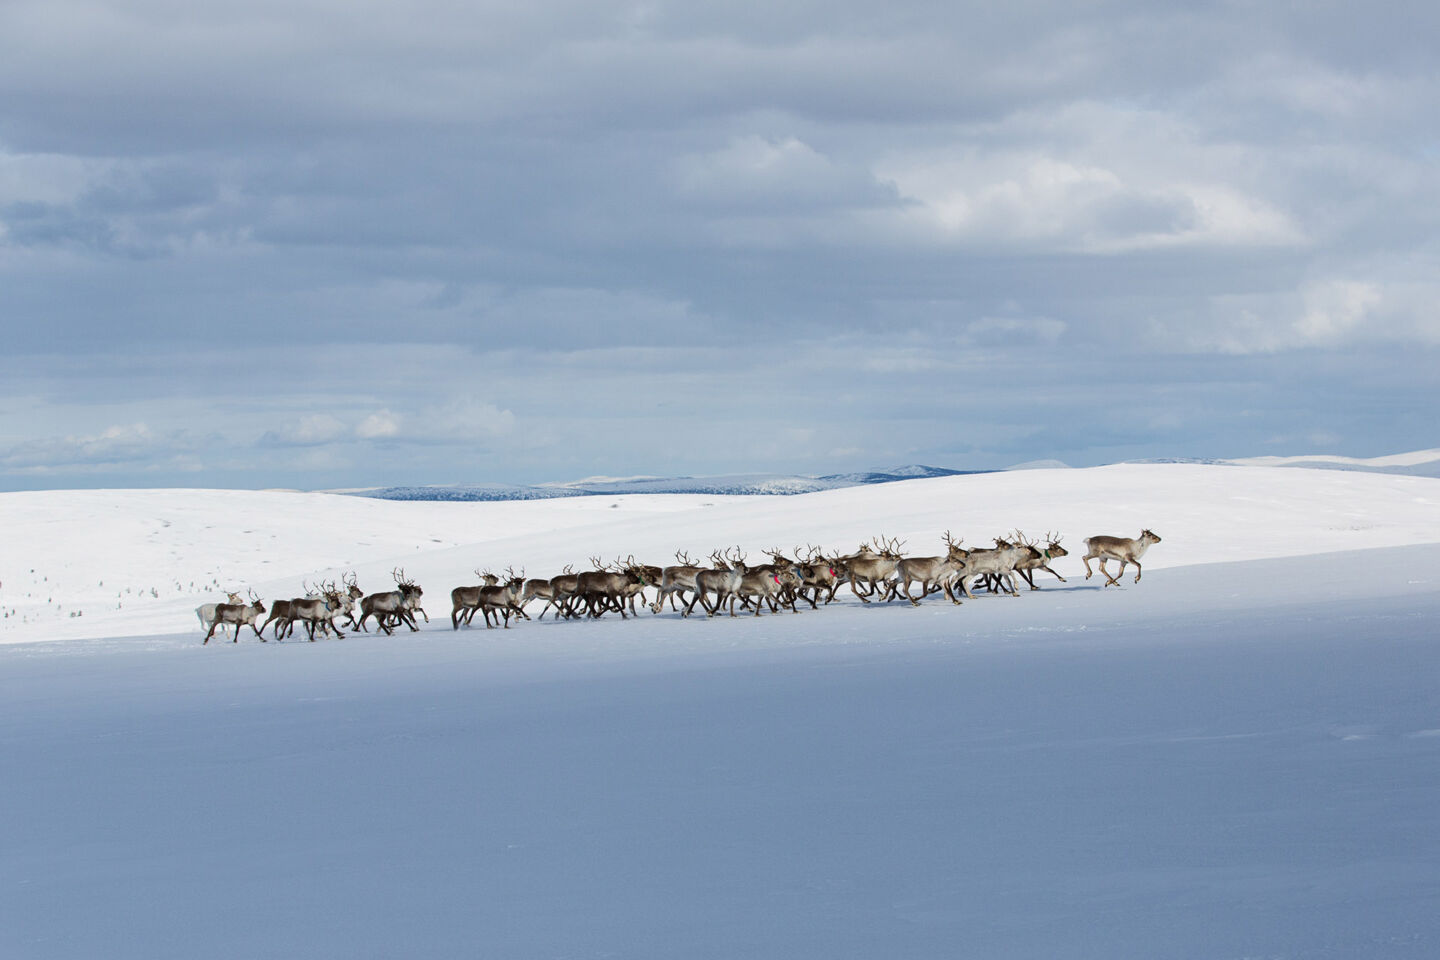 Reindeer herd on the snow in Inari, Finland in winter